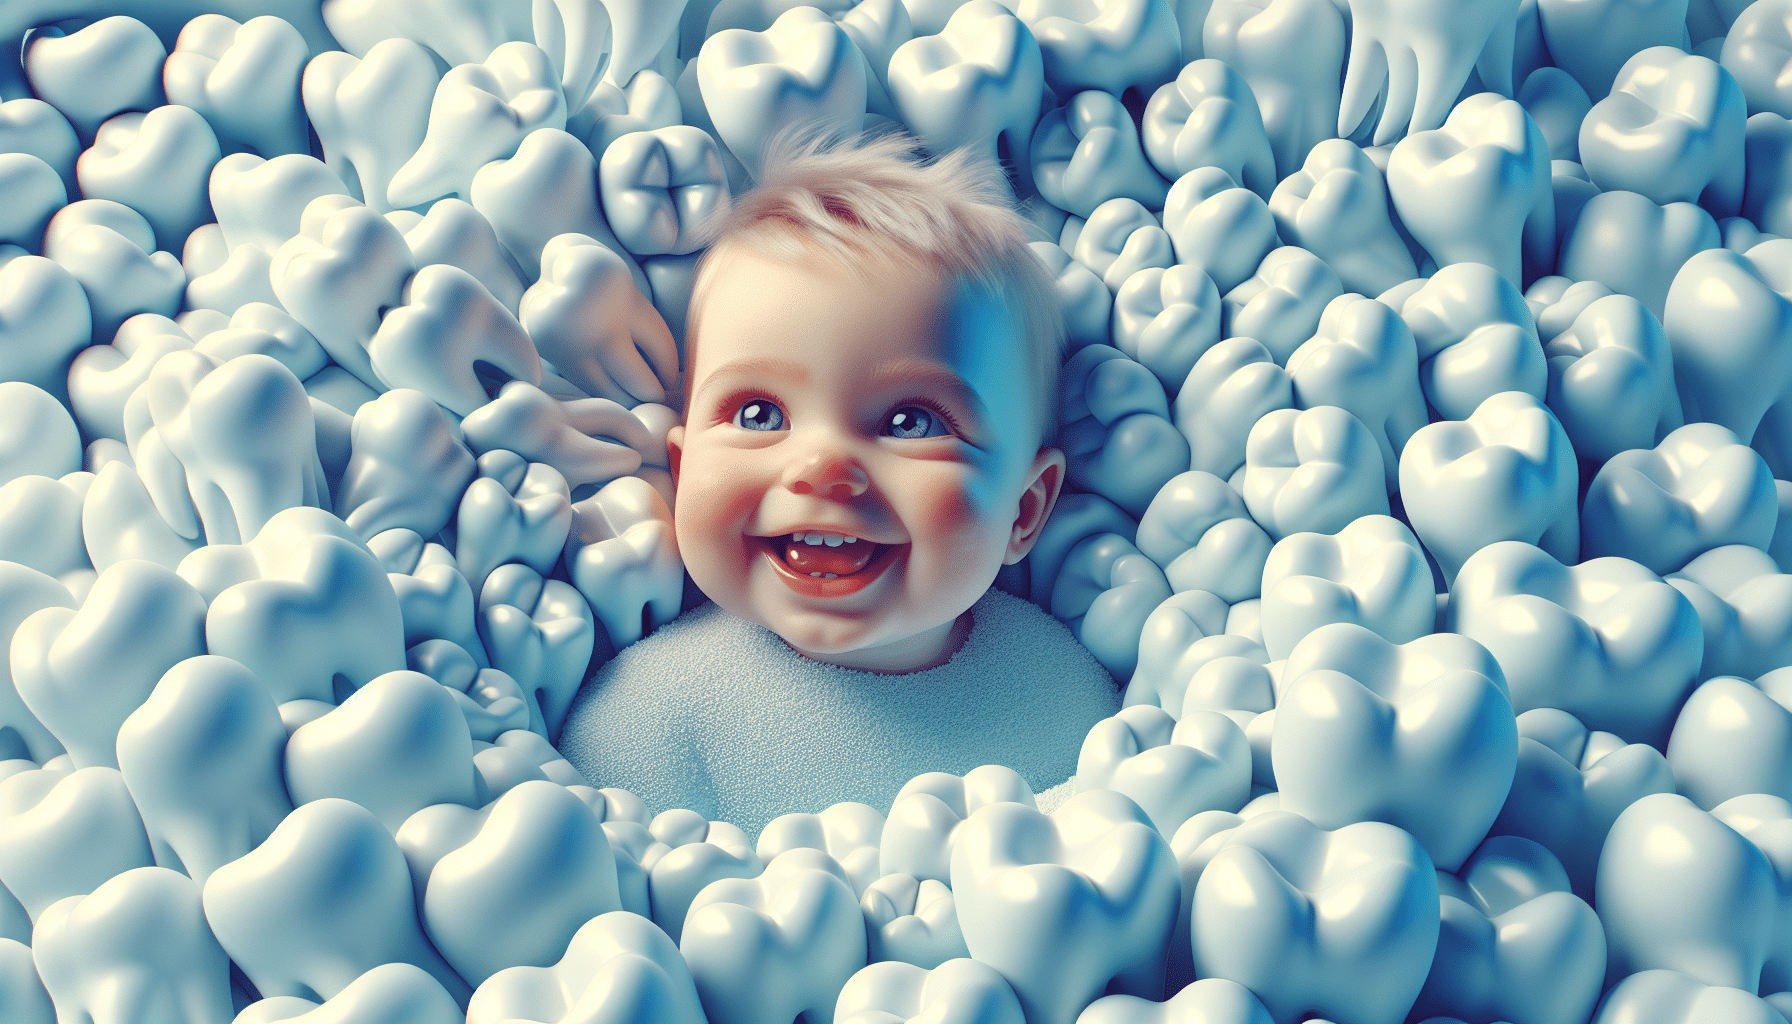 découvrez pourquoi les bébés rêvent de dents dans cet article qui explore les mystères des rêves infantiles.